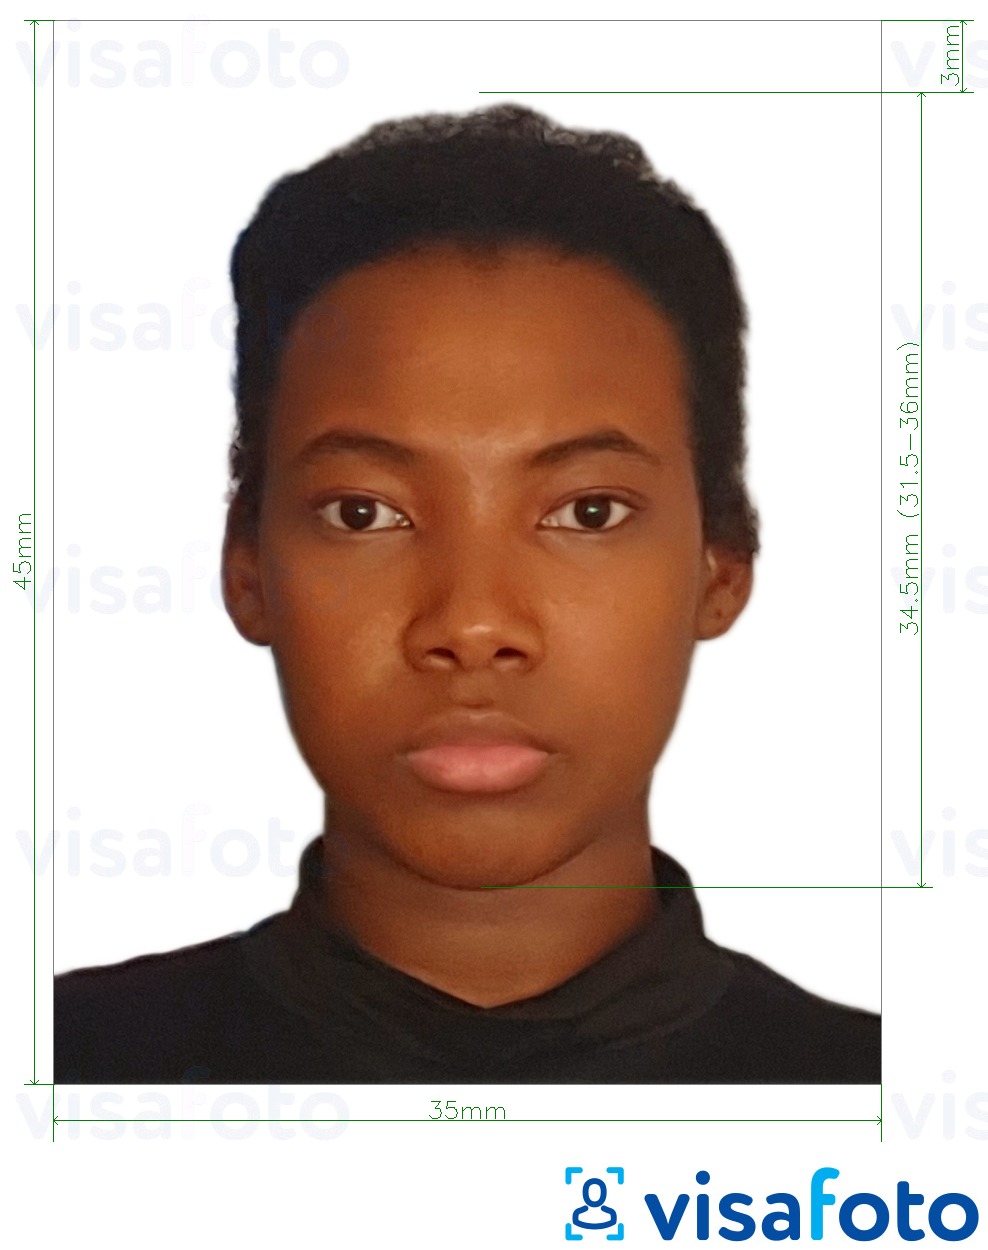 Voorbeeld van foto voor Equatoriaal-Guinea visum 35x45 mm (3,5x4,5 cm) met exacte maatspecificatie